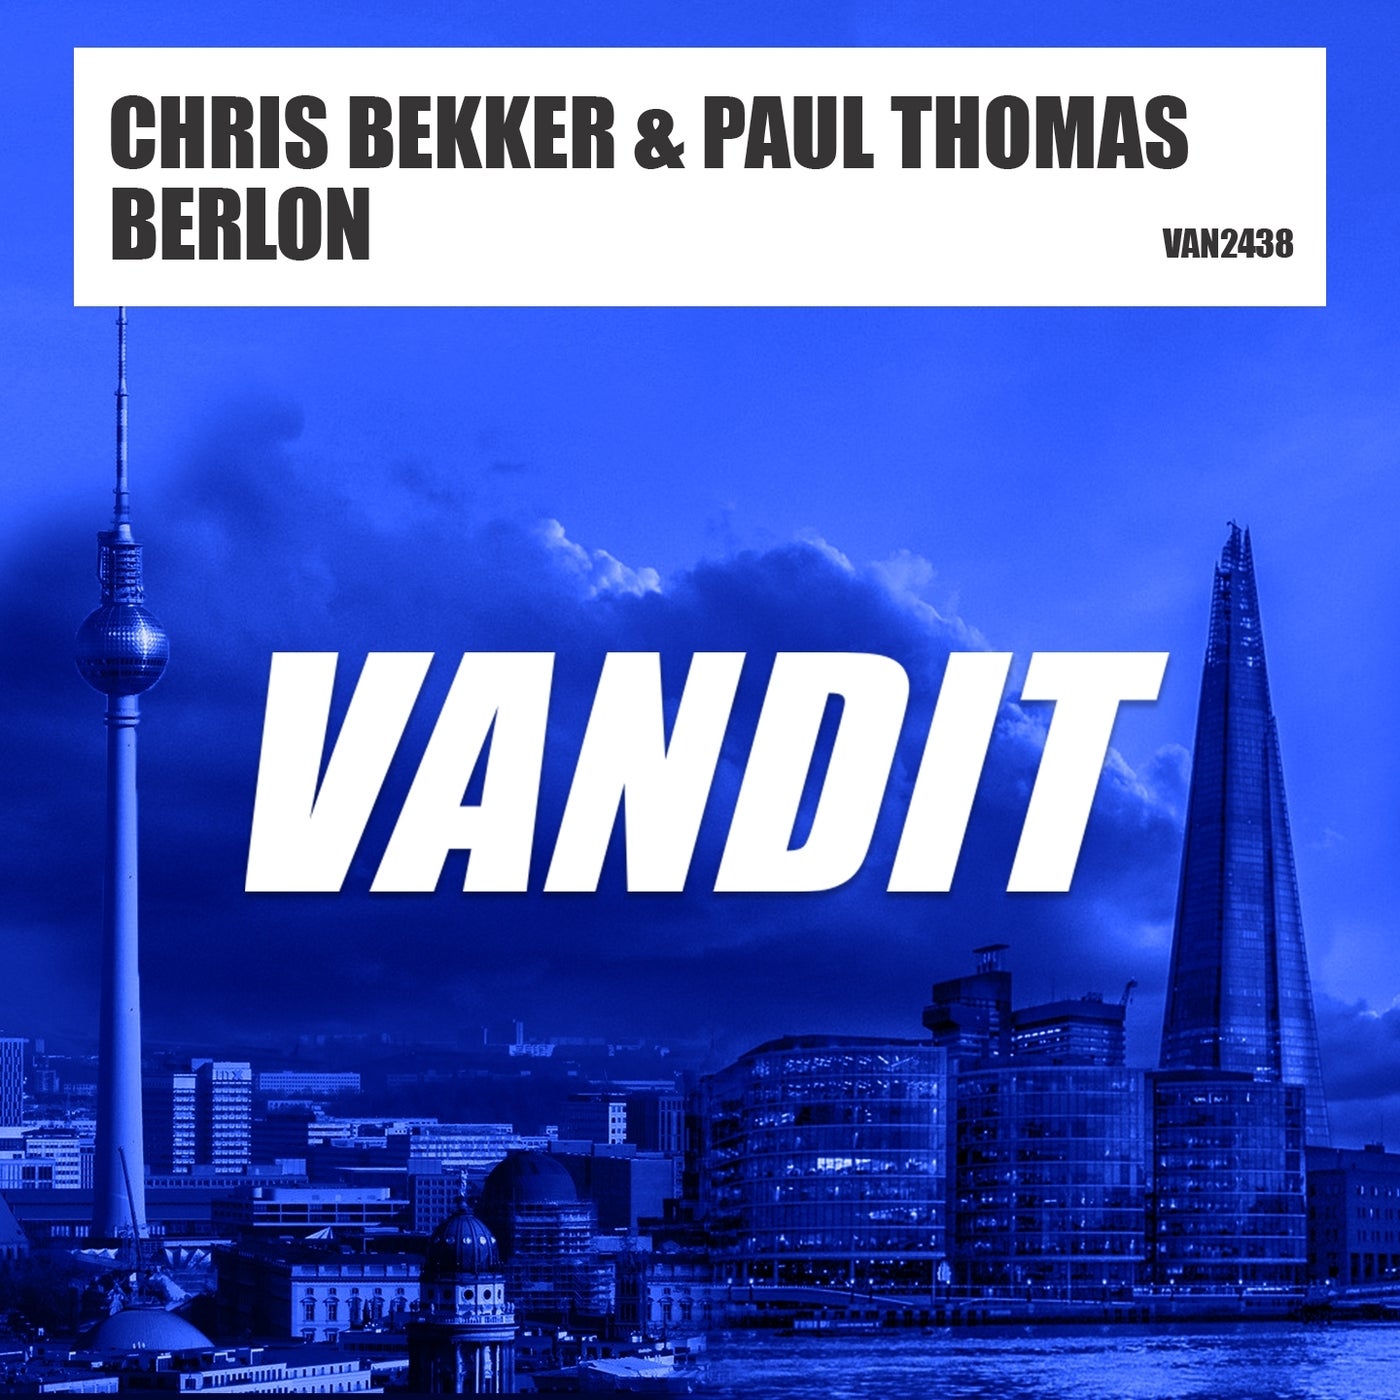 Chris Bekker & Paul Thomas - BERLON [VAN2438]